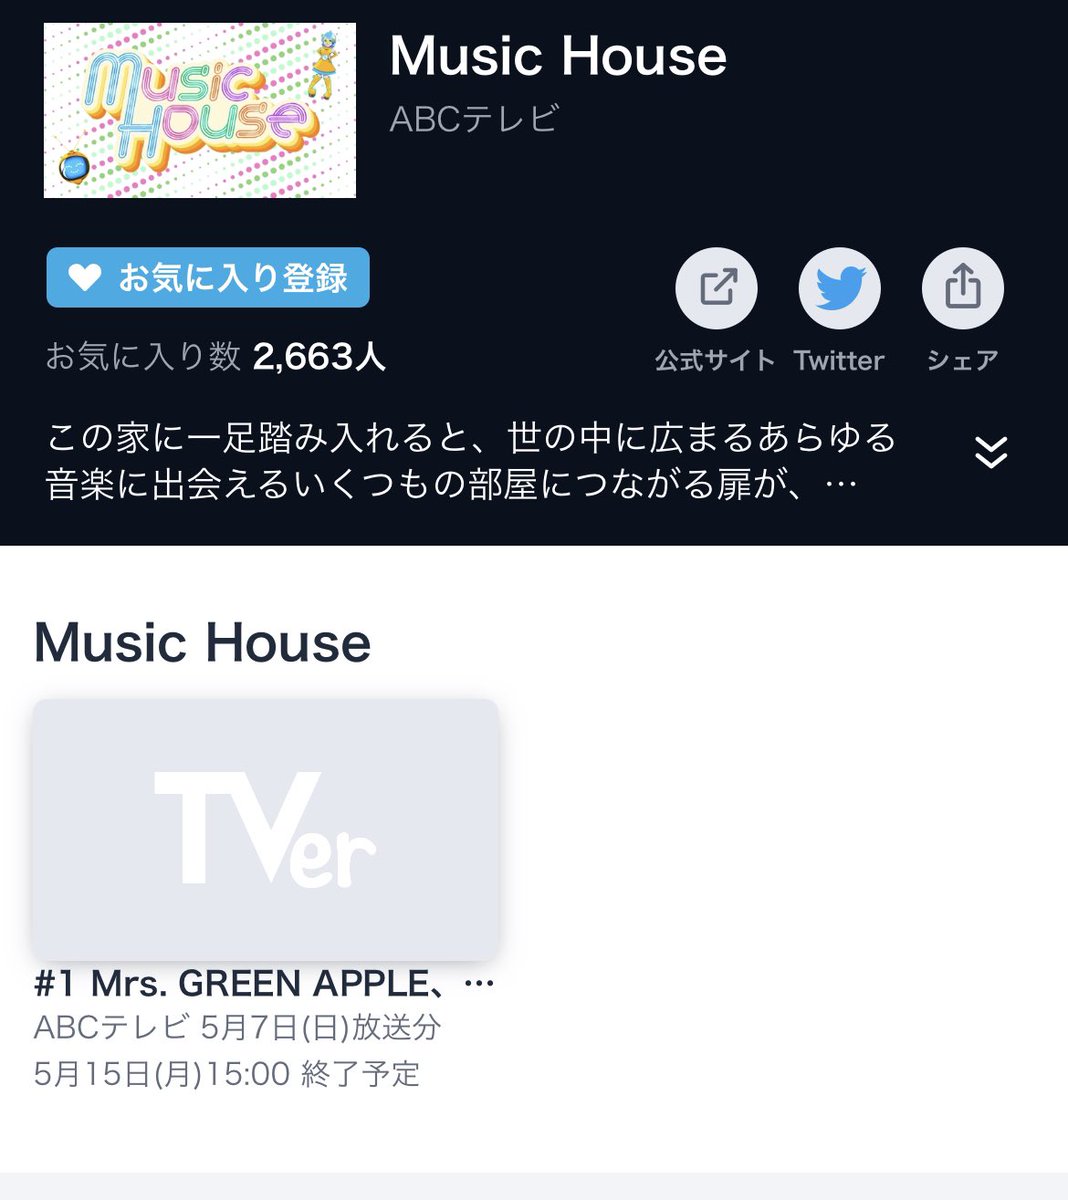 ABCテレビ「Music House」🎶
5月7日(日)26:00〜放送したのが、TVerで見れるよ！！
関西圏以外の方5月15日まで公開だよ
#BEFIRST
#MUSICHOUSE